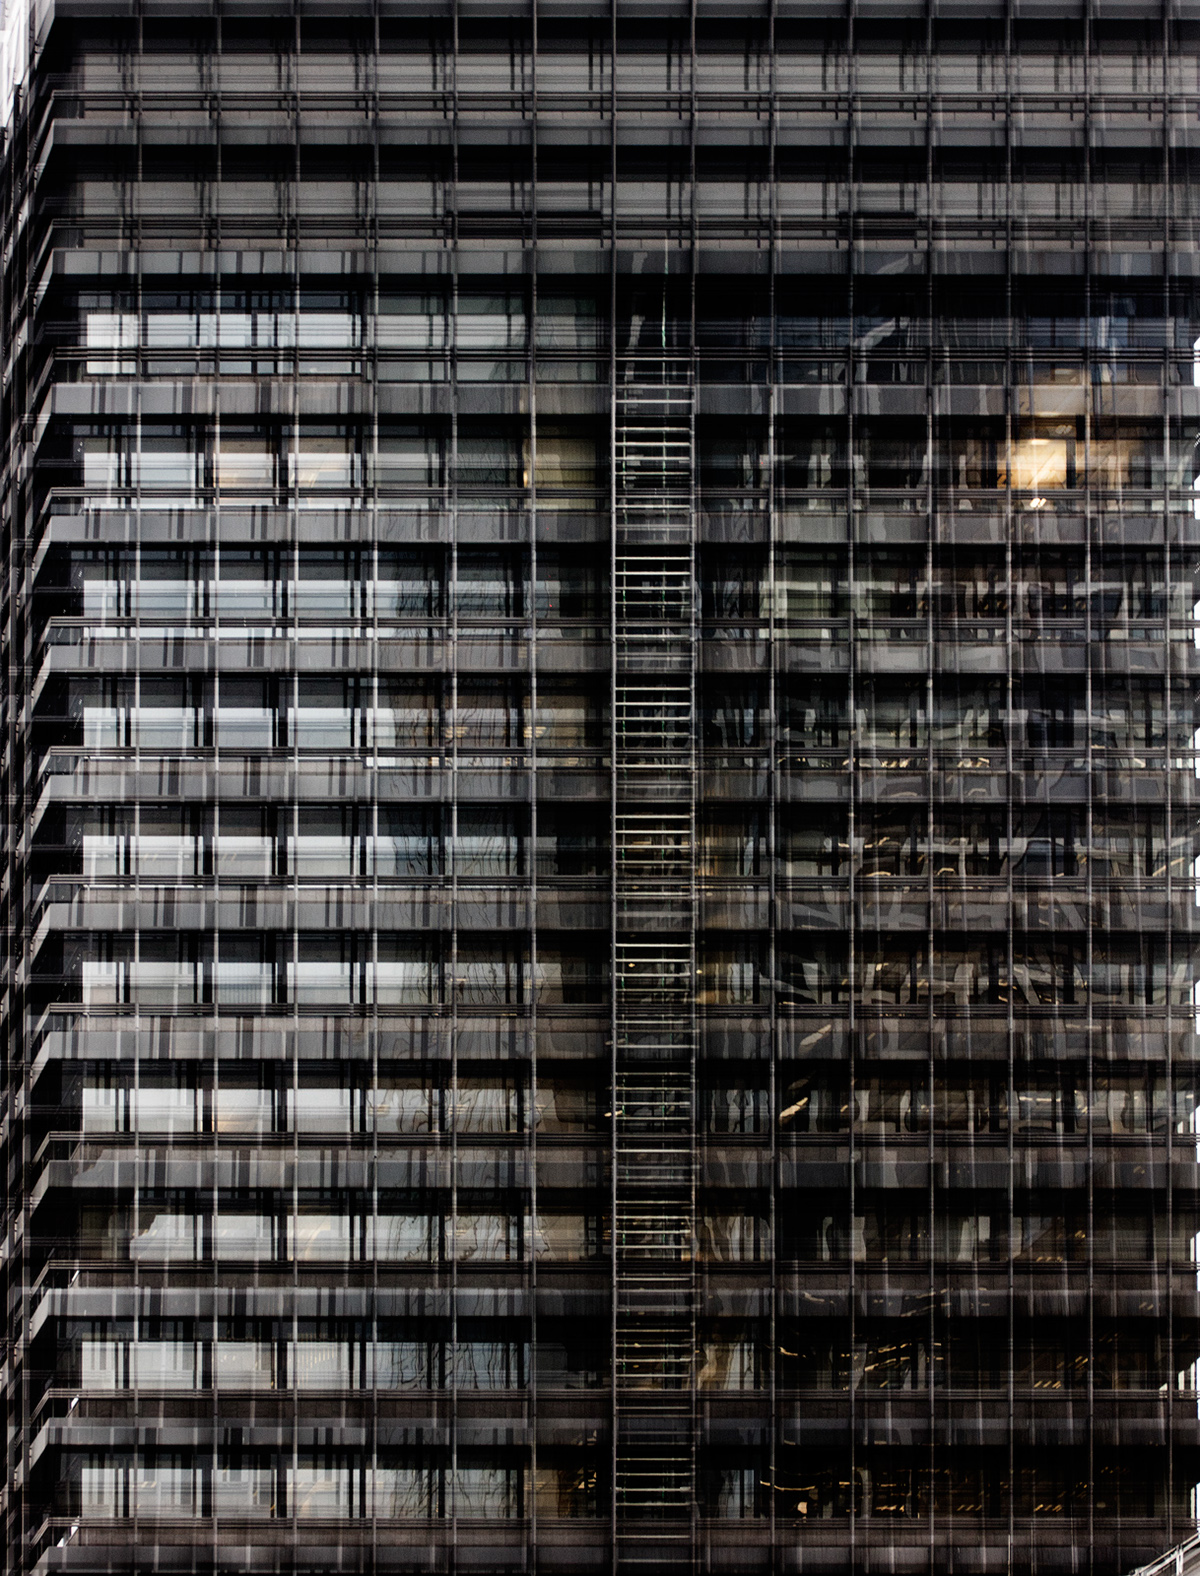 deconstruction architecturephotography fractals carstenwitte Frankfurt ffm deutsche bank skyscraper Bank germany